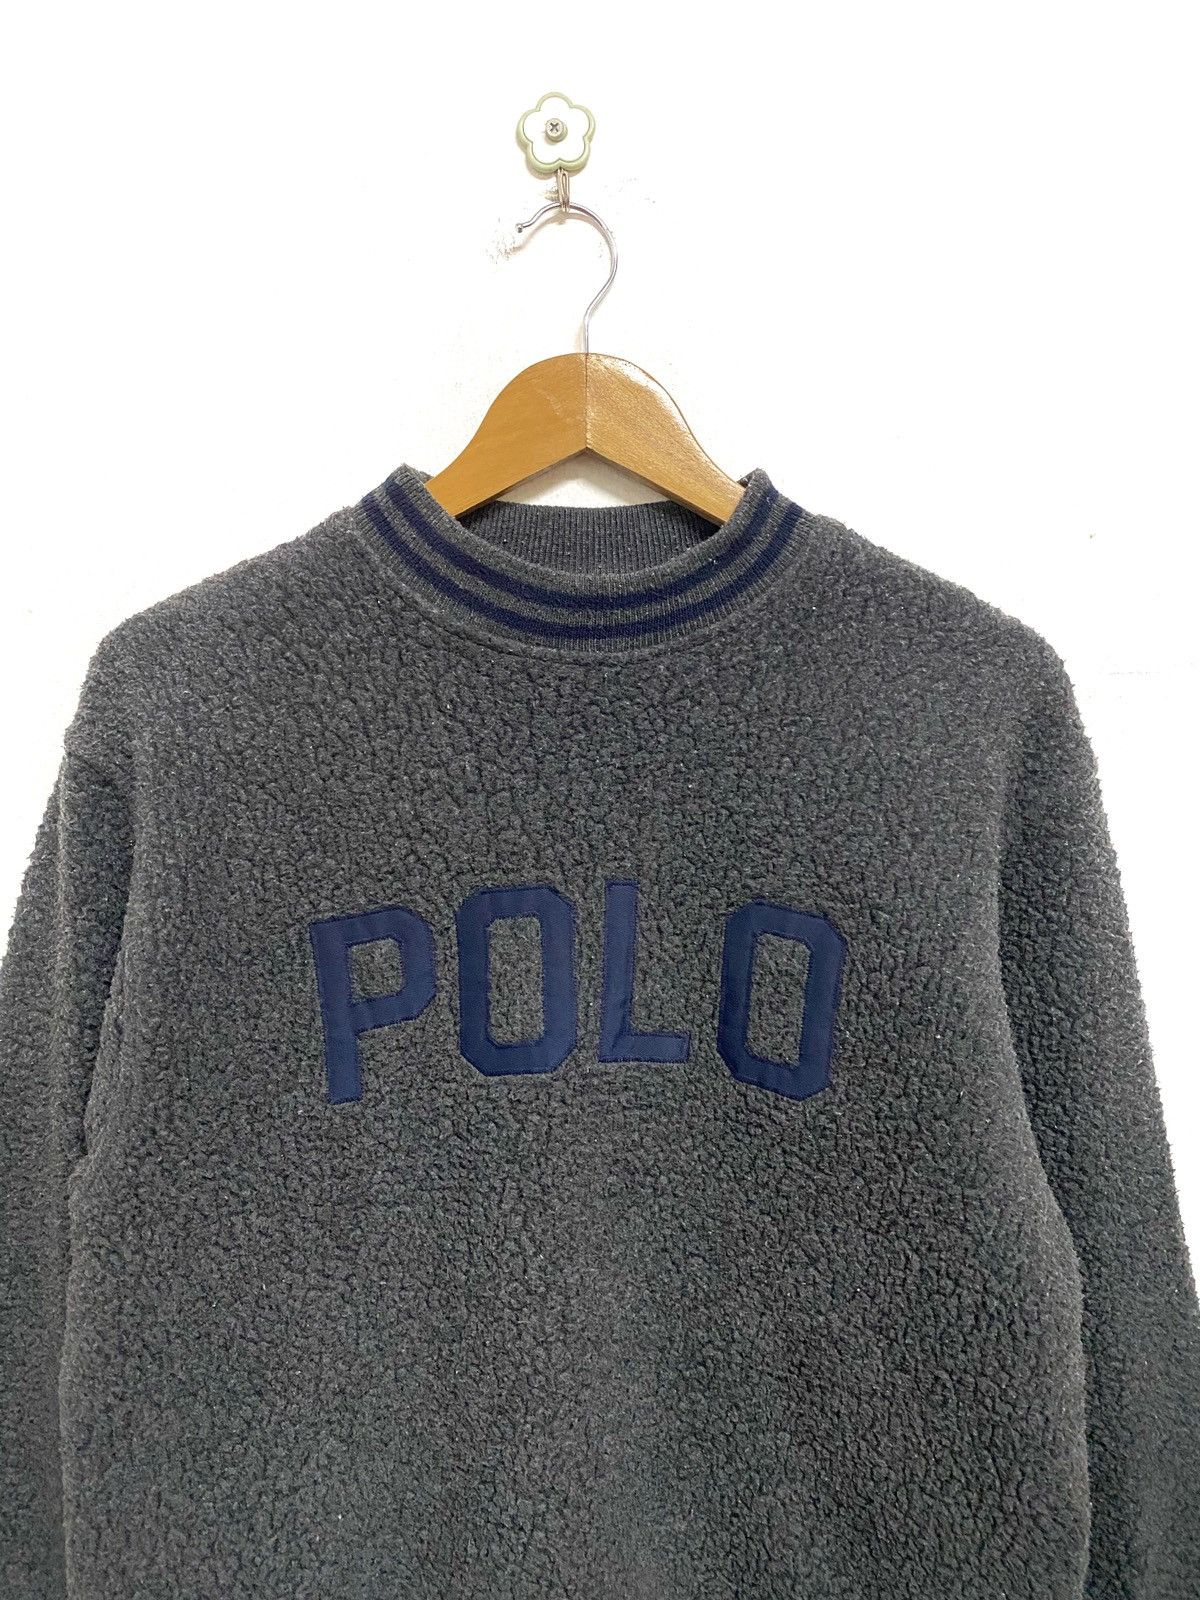 Vintage Polo Ralph Lauren Gray Fleece Spellout Sweatshirt - 2